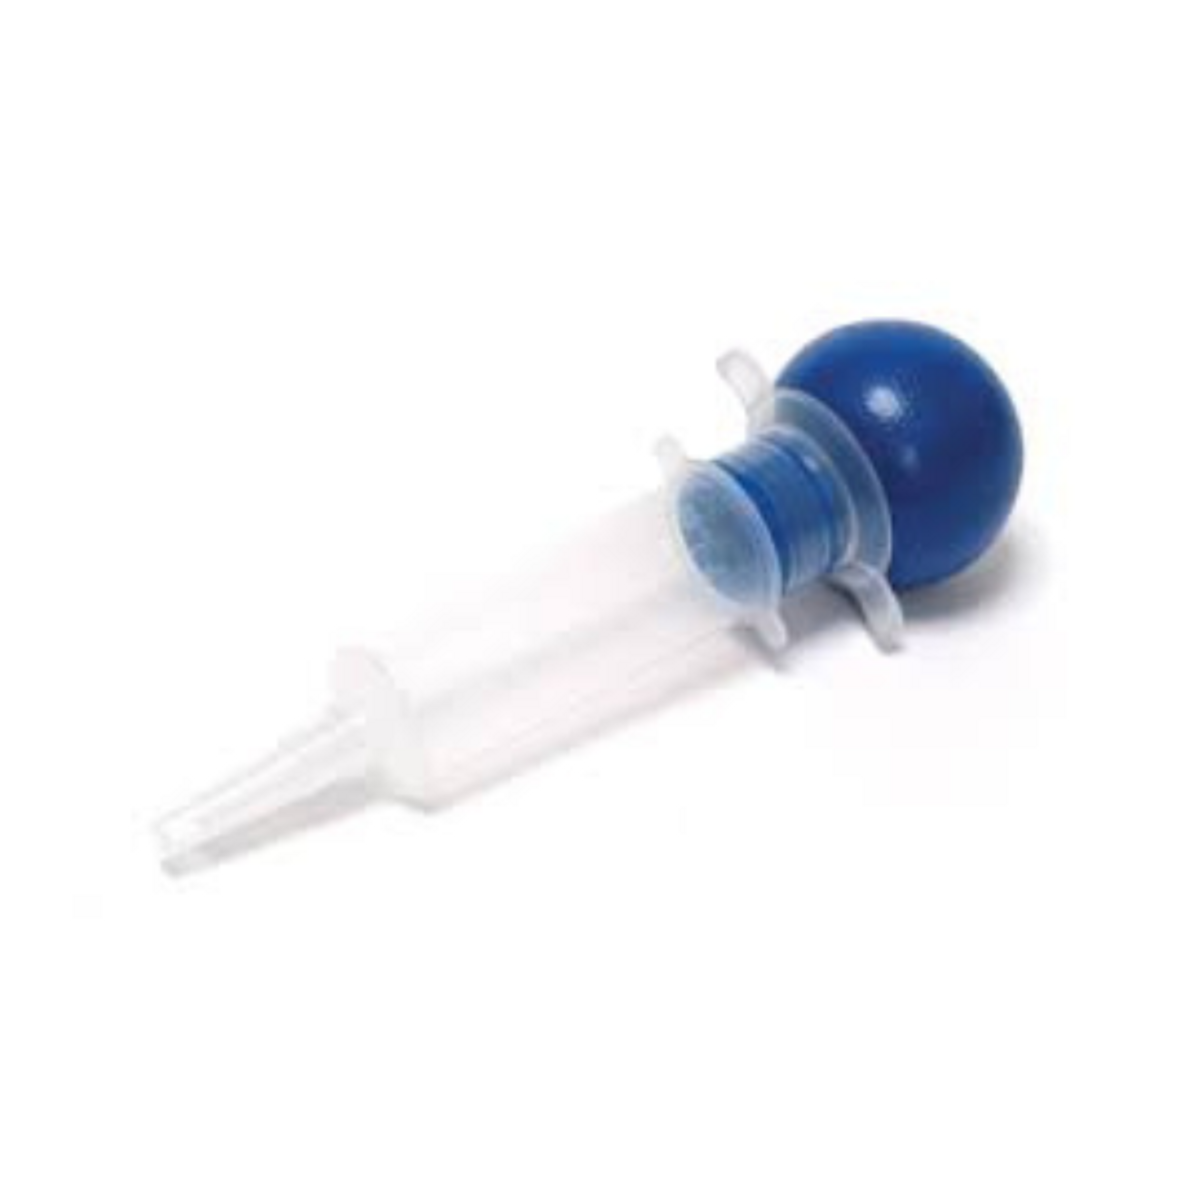 Pro Advantage Bulb Irrigation Syringes